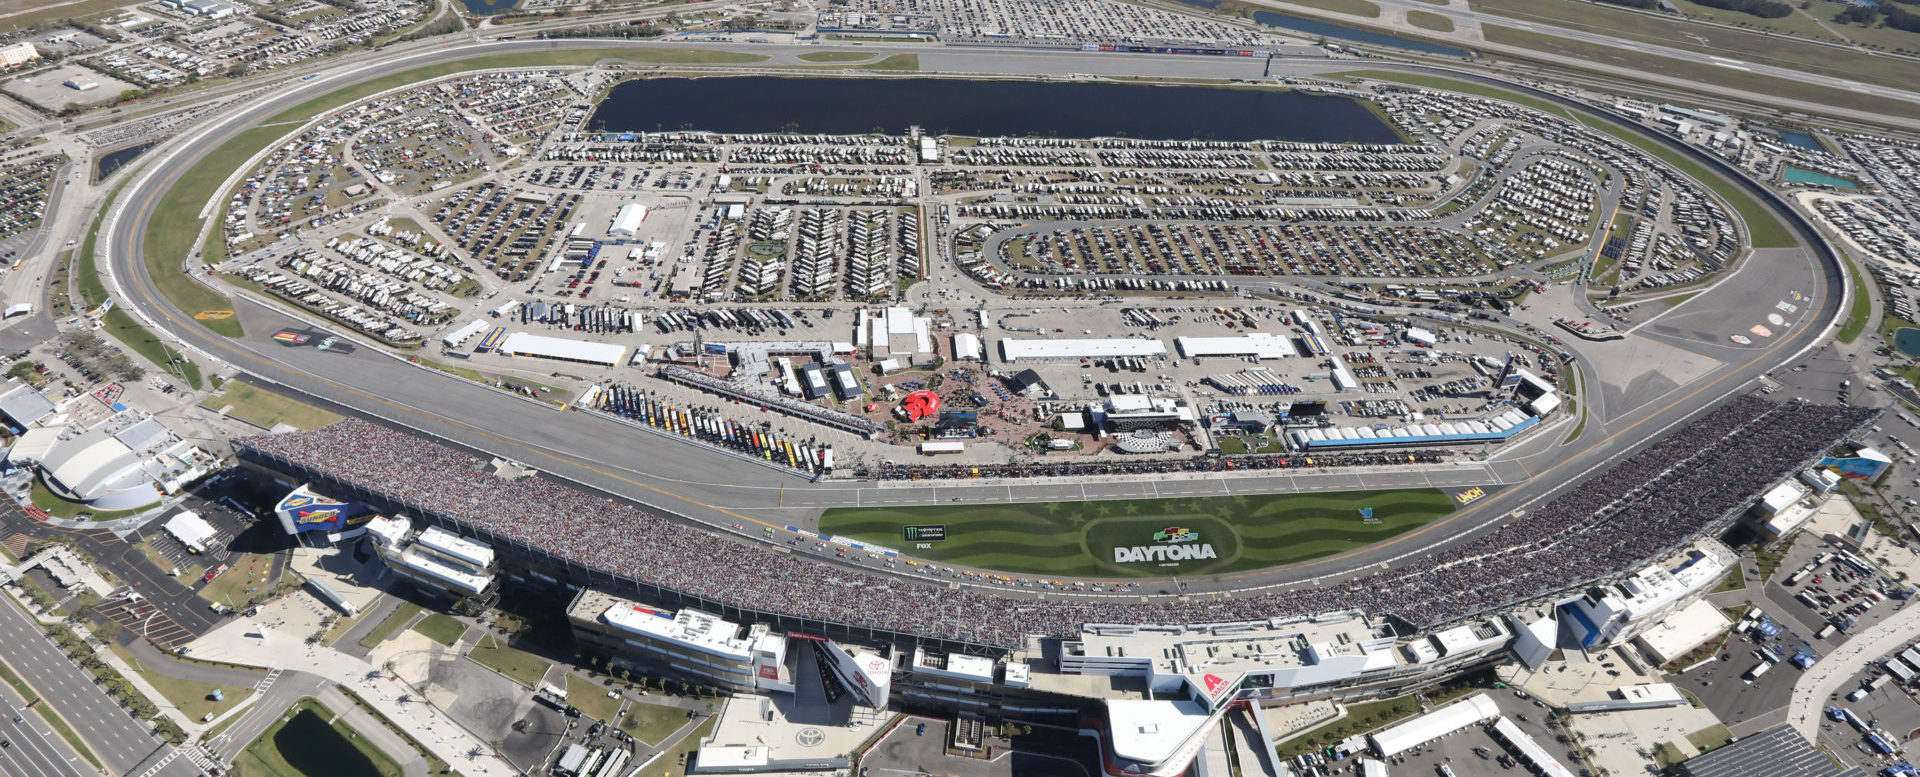 Daytona International Speedway. Photo courtesy of Daytona International Speedway.